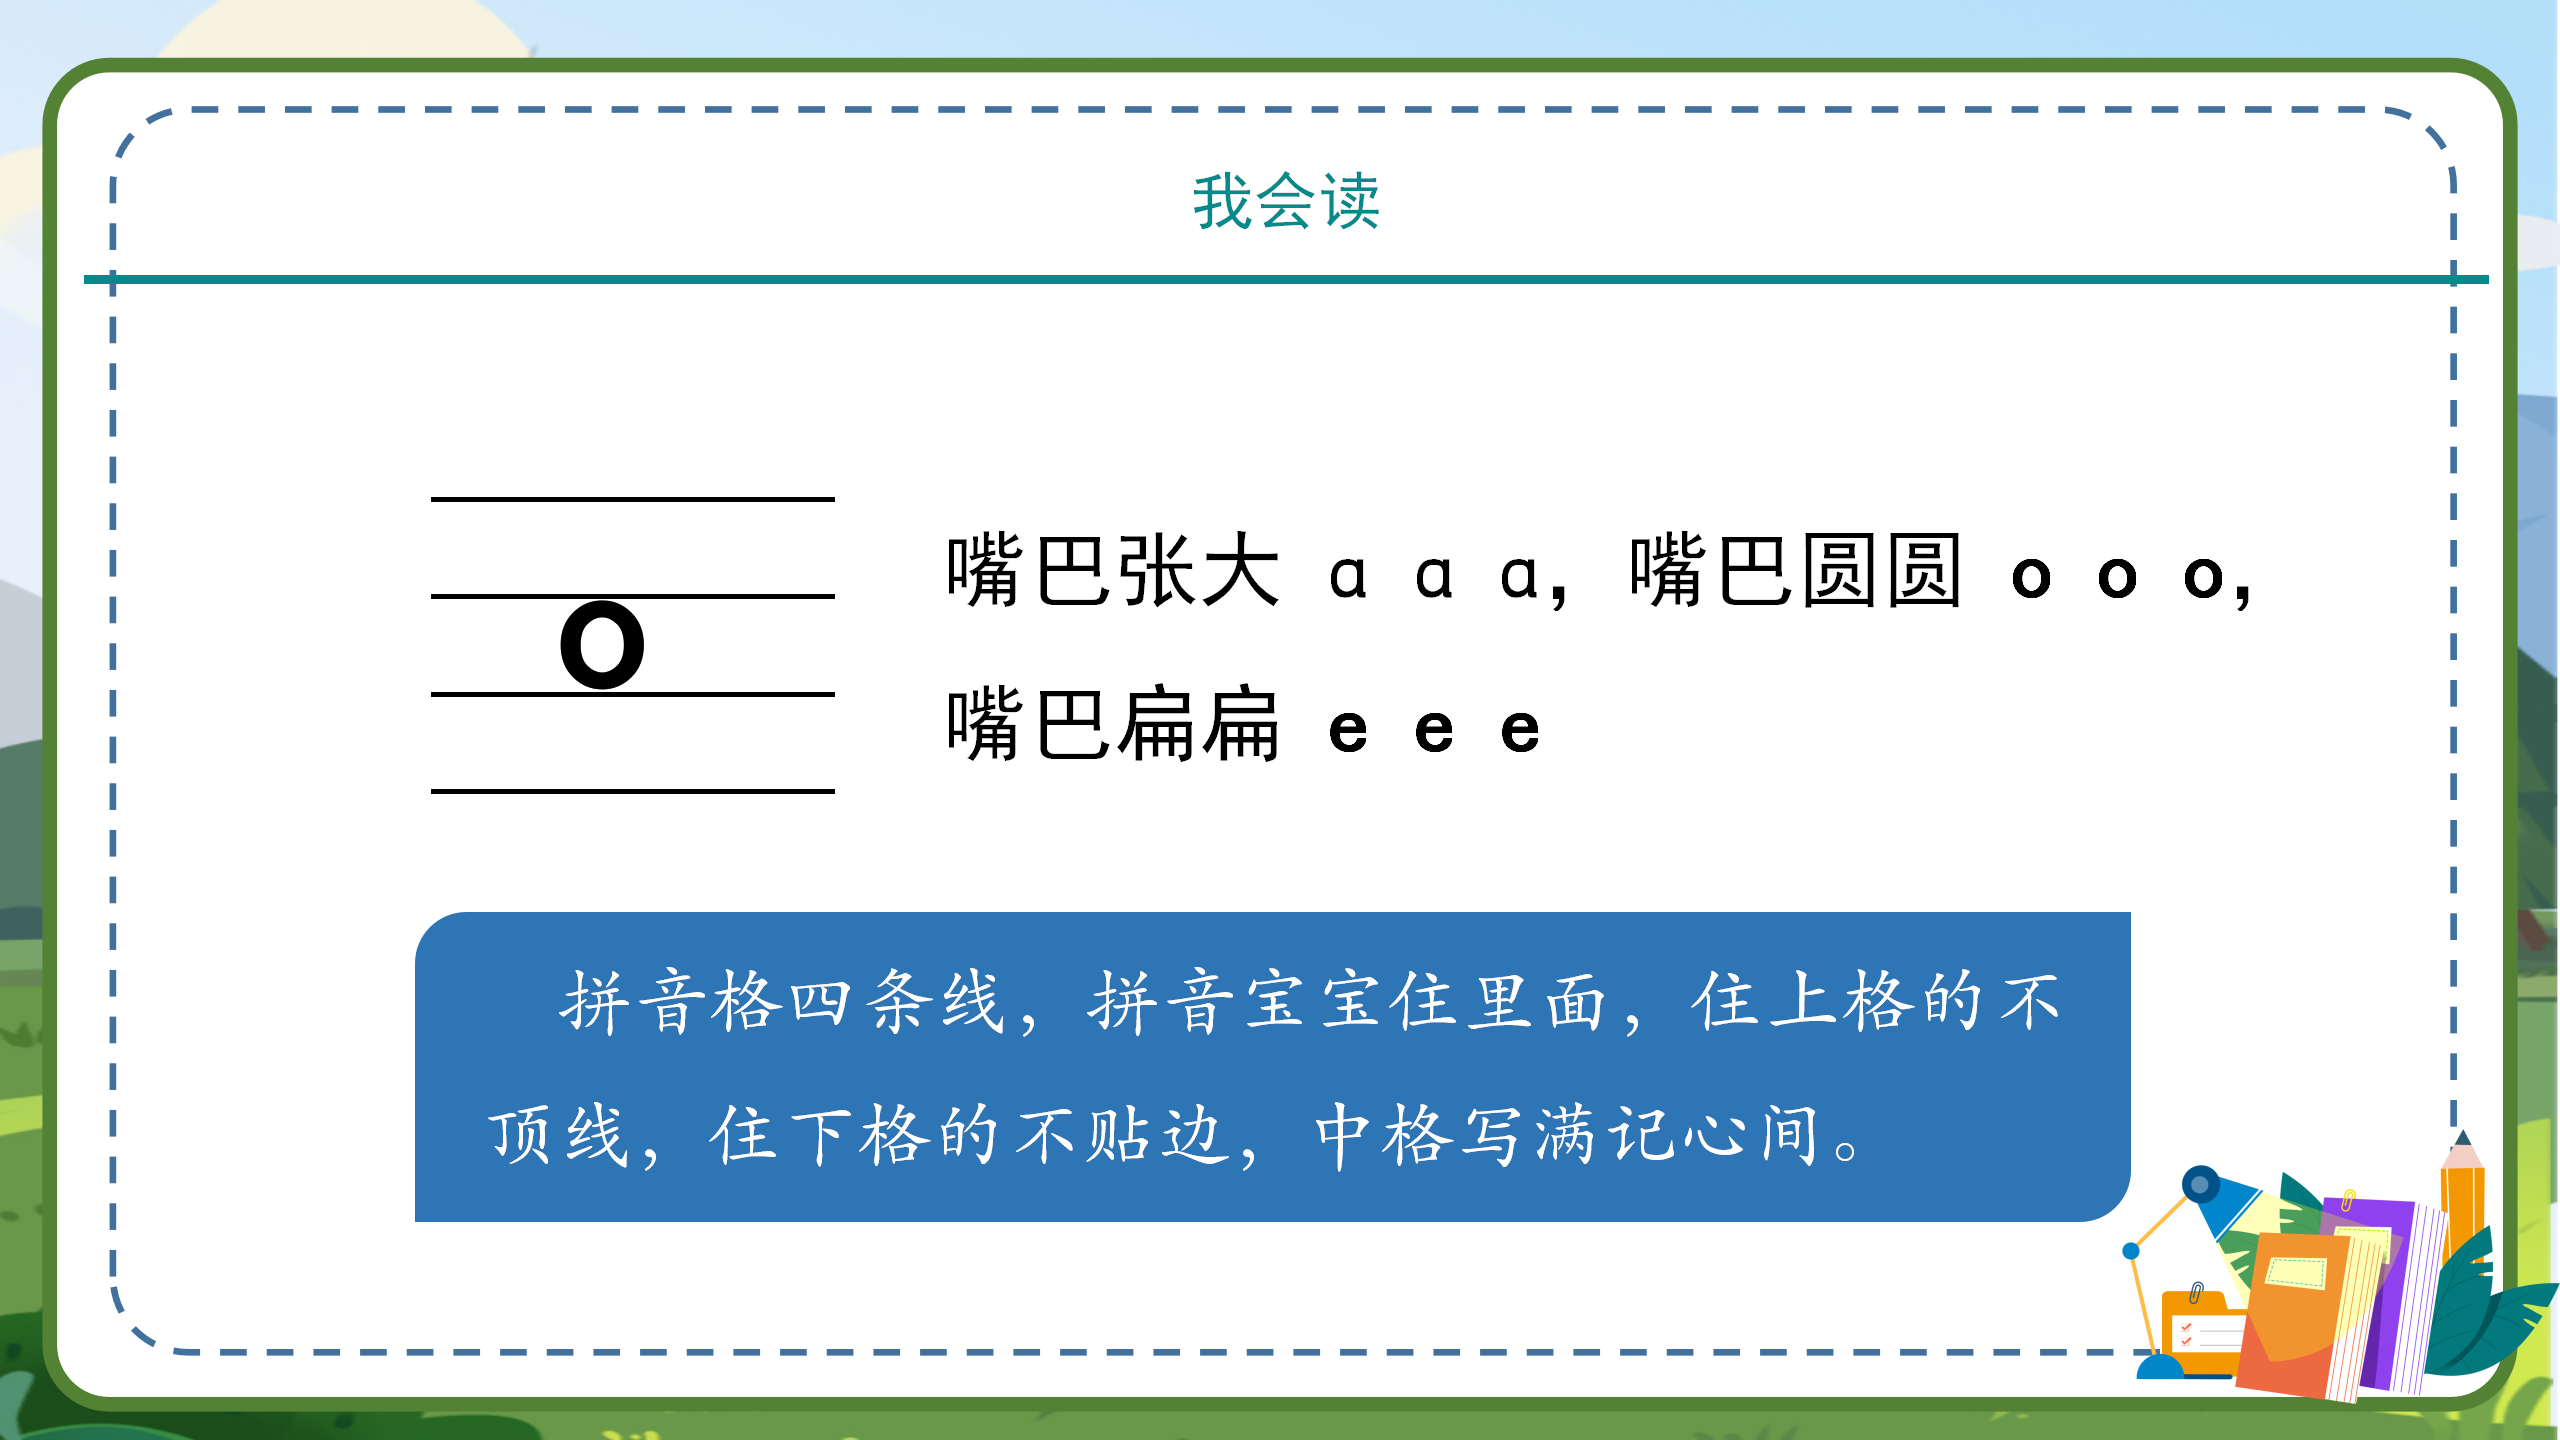 汉语拼音aoe教学ppt模板PPT课件下载